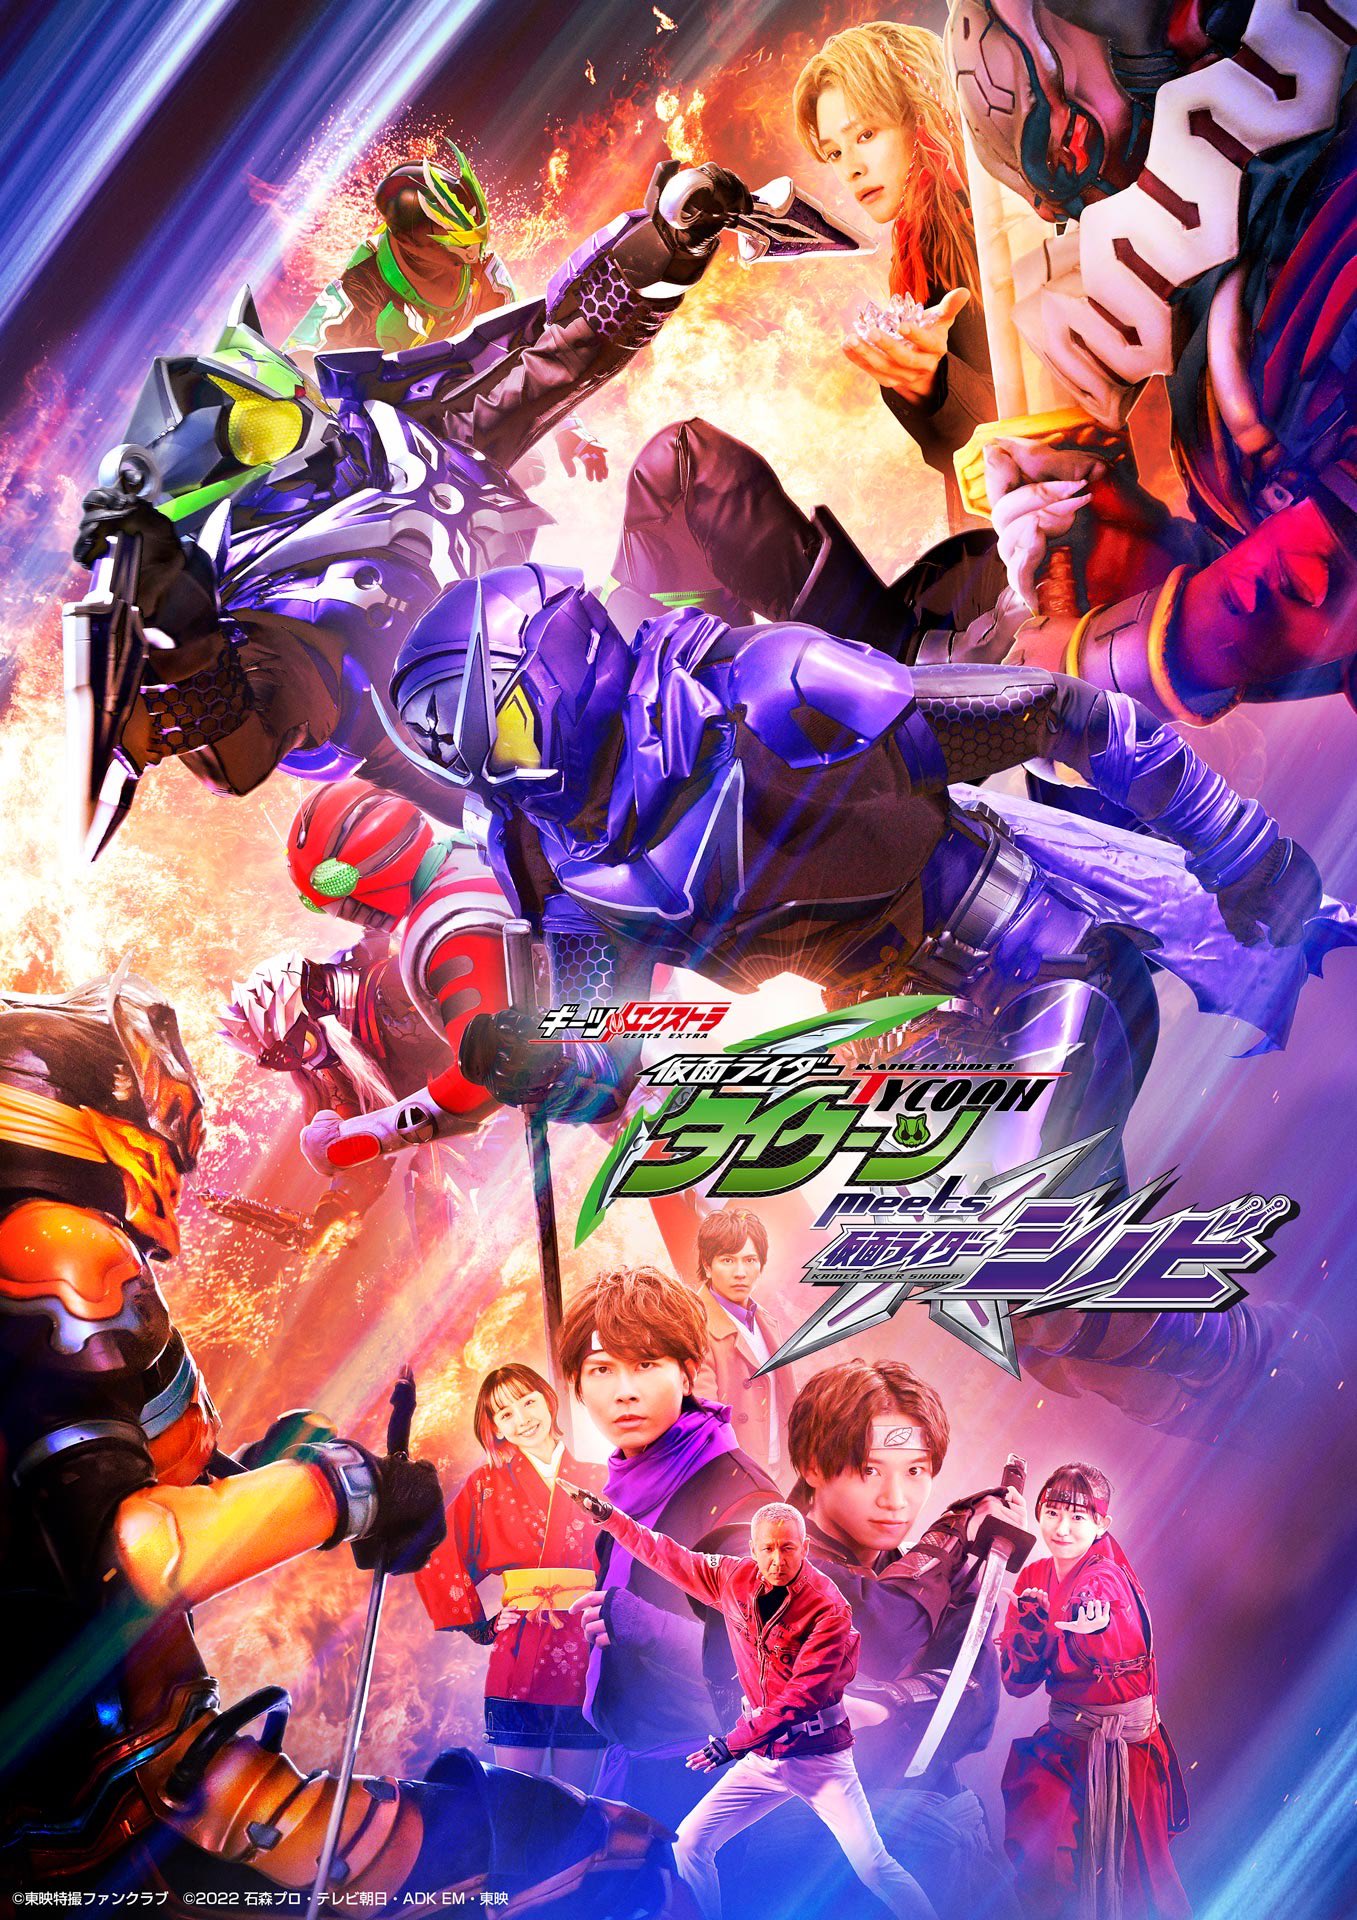 Xem Phim Geats Extra: Kamen Rider Tycoon Meets Kamen Rider Shinobi (Giitsu Ekisutora: Kamen Raidaa Taikuun miitsu Kamen Raidaa Shinobi)